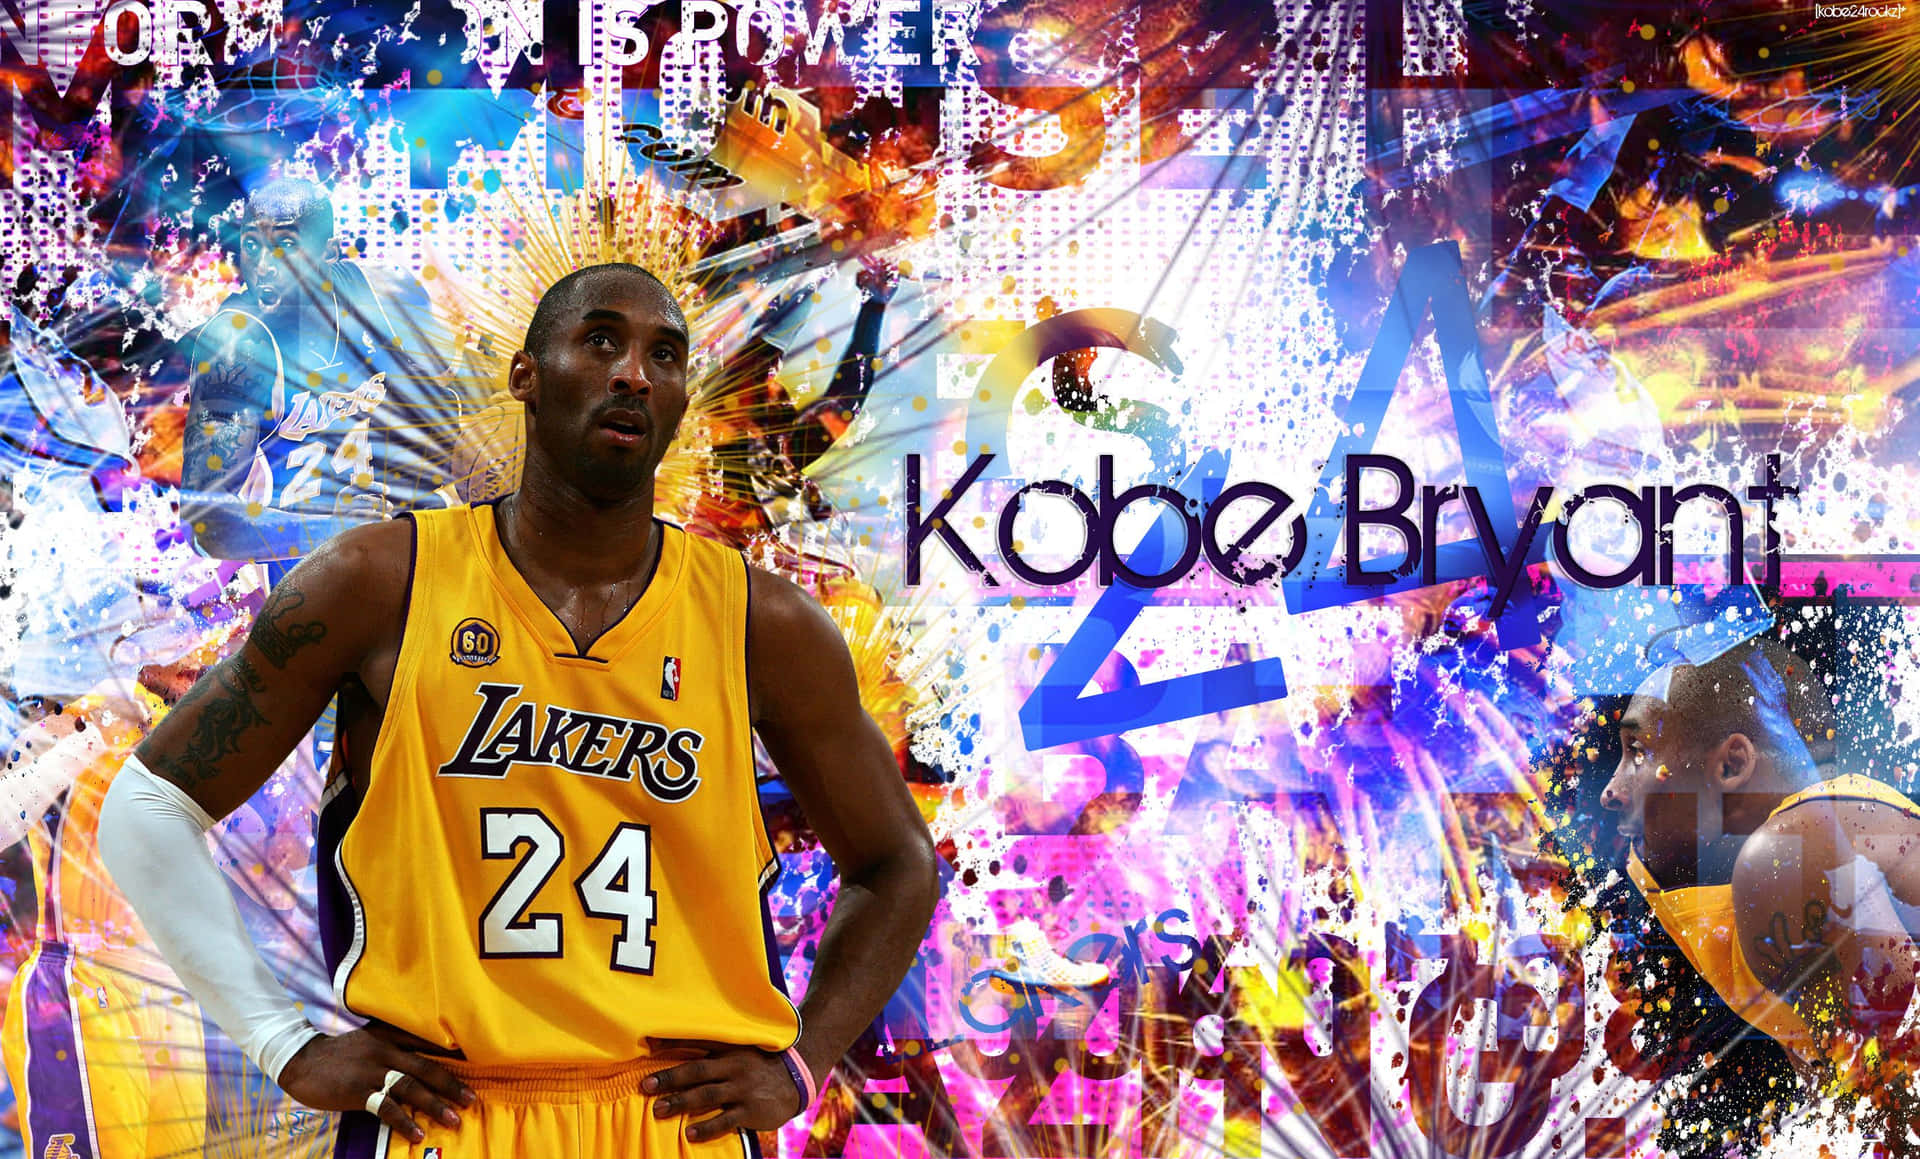 Legendariskla Laker, Kobe Bryant